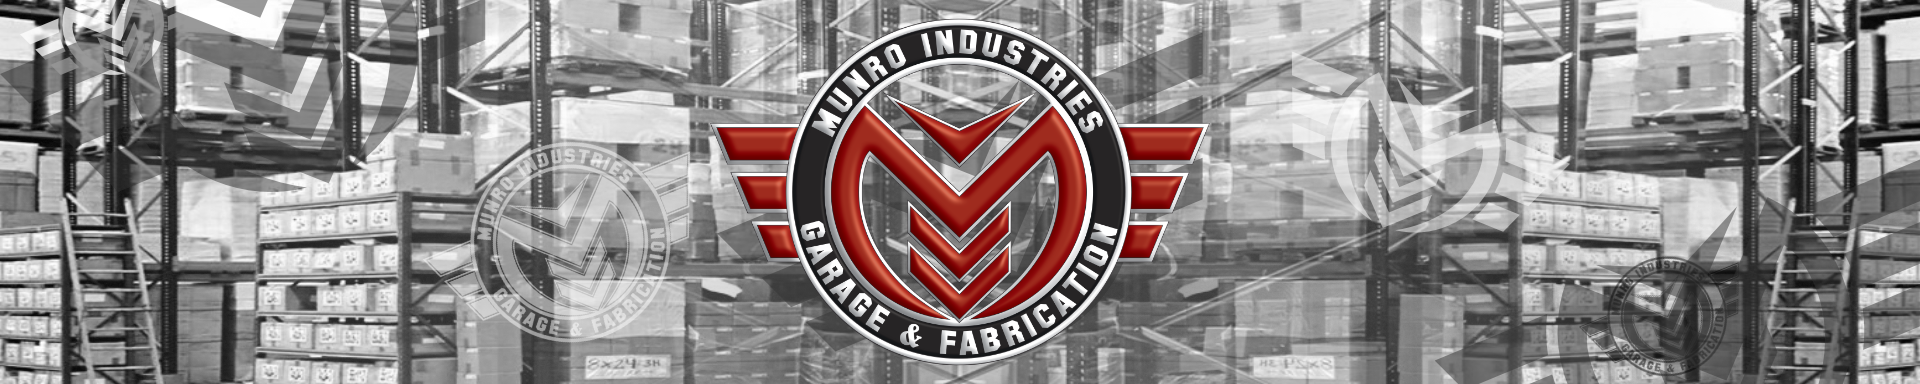 Custom & Specialty Shop | GarageAndFab.com | Munro Industries gf-10010309